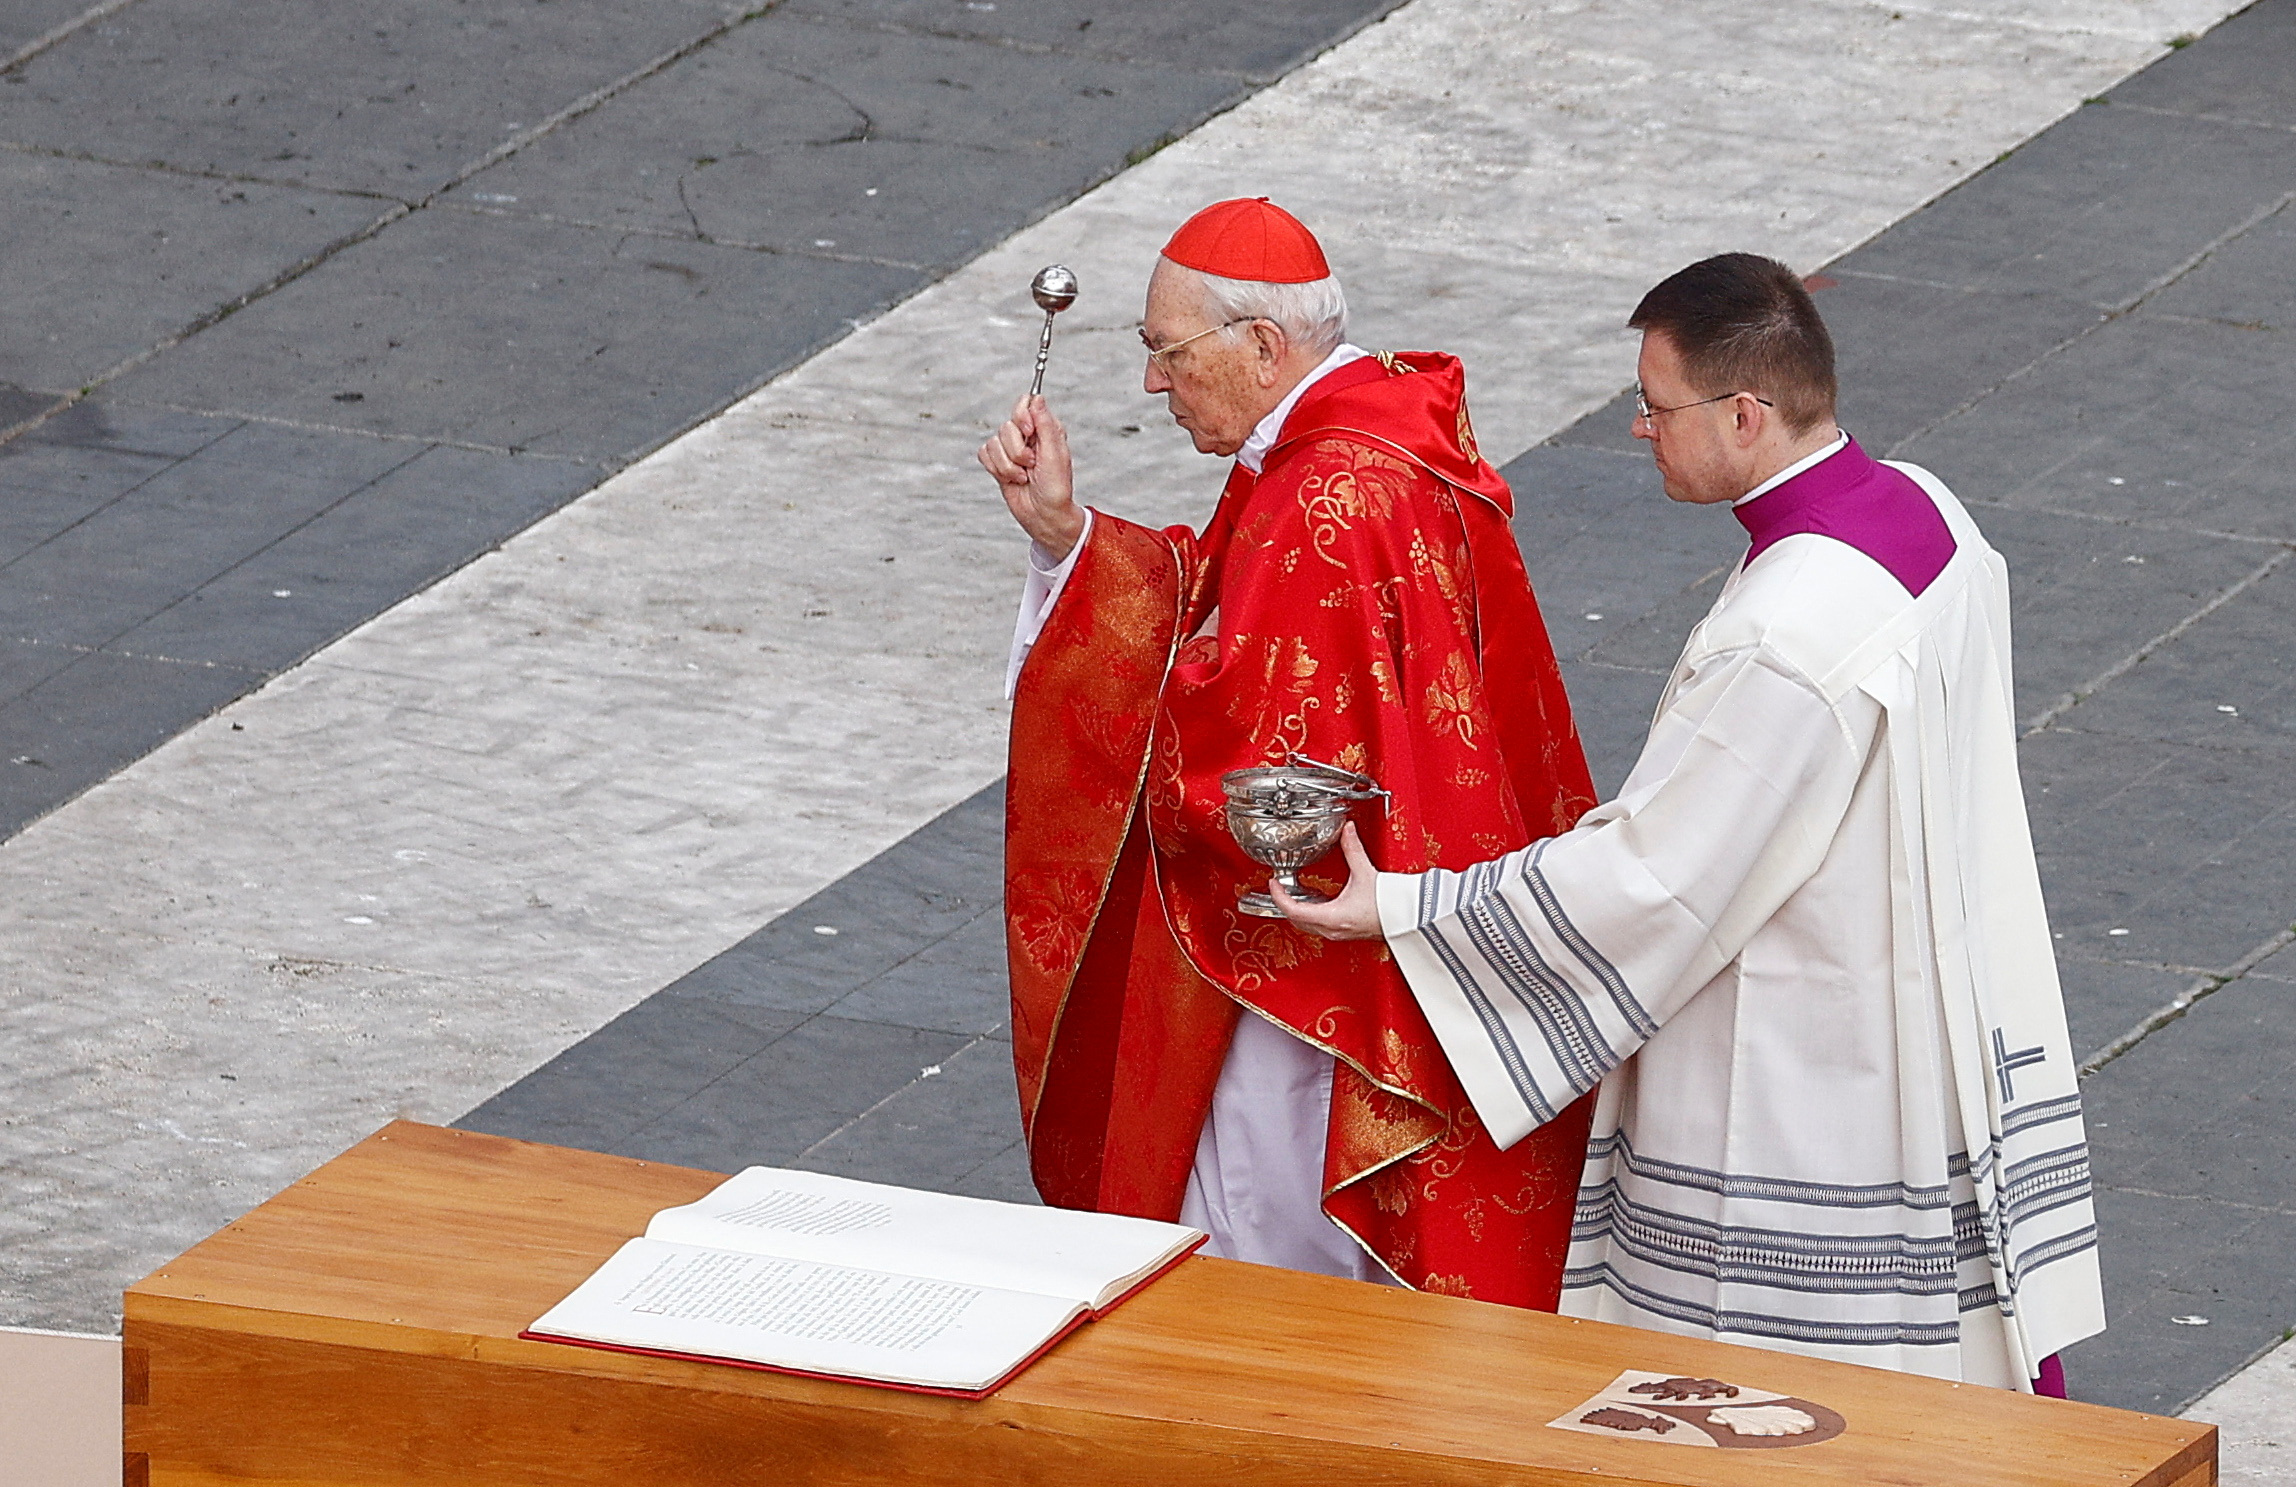 El cardenal Giovanni Battista bendice el ataúd con agua bendita en el final de la ceremonia.